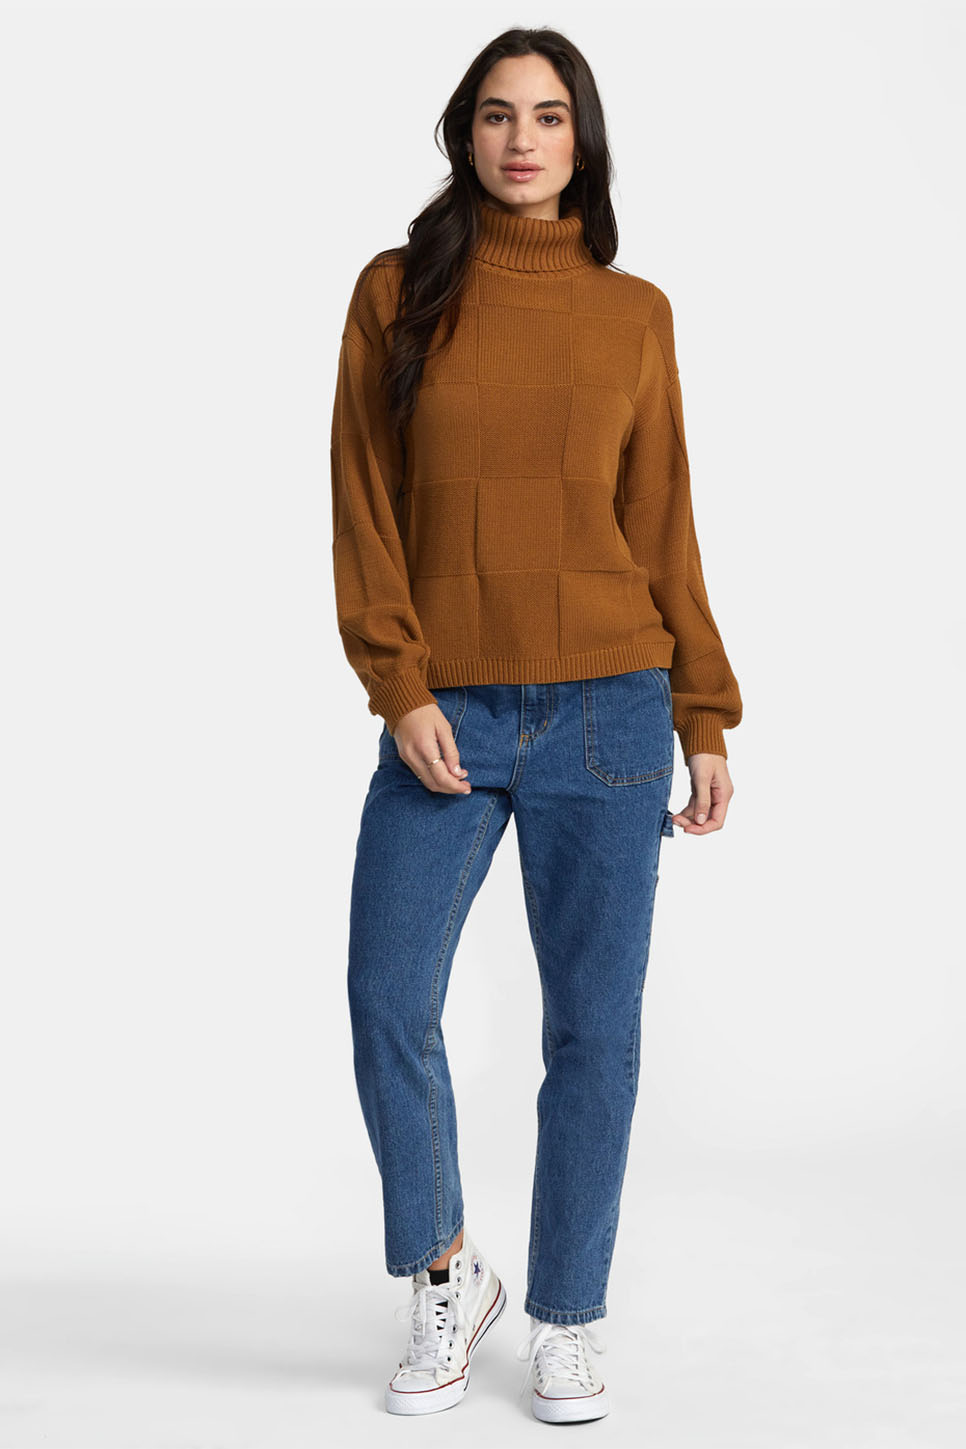 RVCA - Vineyard Sweater - Workwear Brown